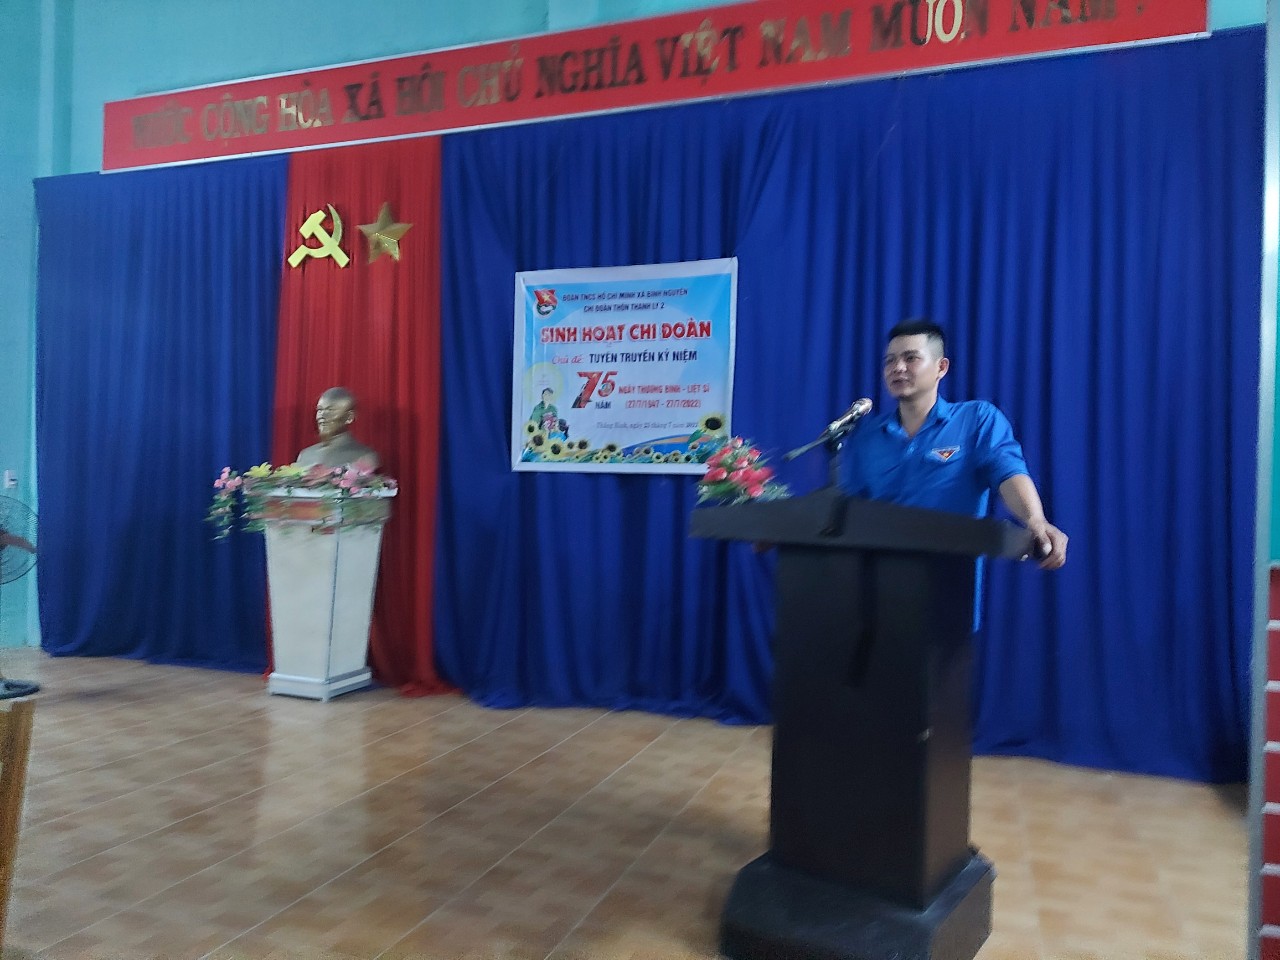 Chi đoàn thôn Thanh Ly 2 - xã Bình Nguyên tổ chức sinh hoạt chi đoàn tháng 7 năm 2022